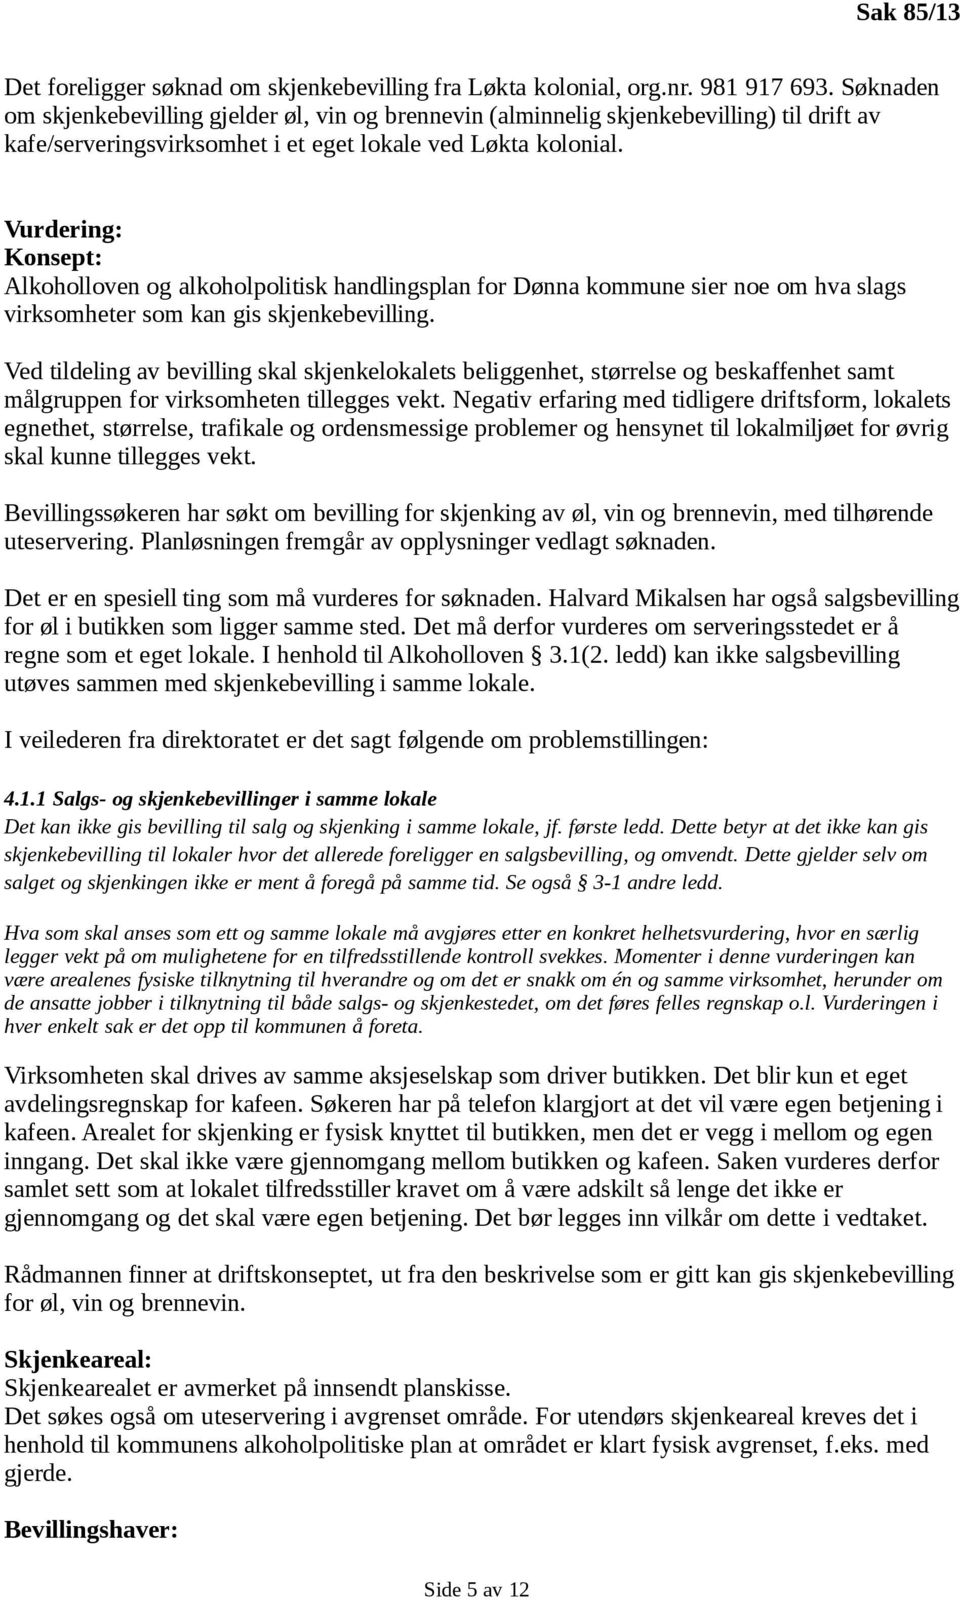 Vurdering: Konsept: Alkoholloven og alkoholpolitisk handlingsplan for Dønna kommune sier noe om hva slags virksomheter som kan gis skjenkebevilling.